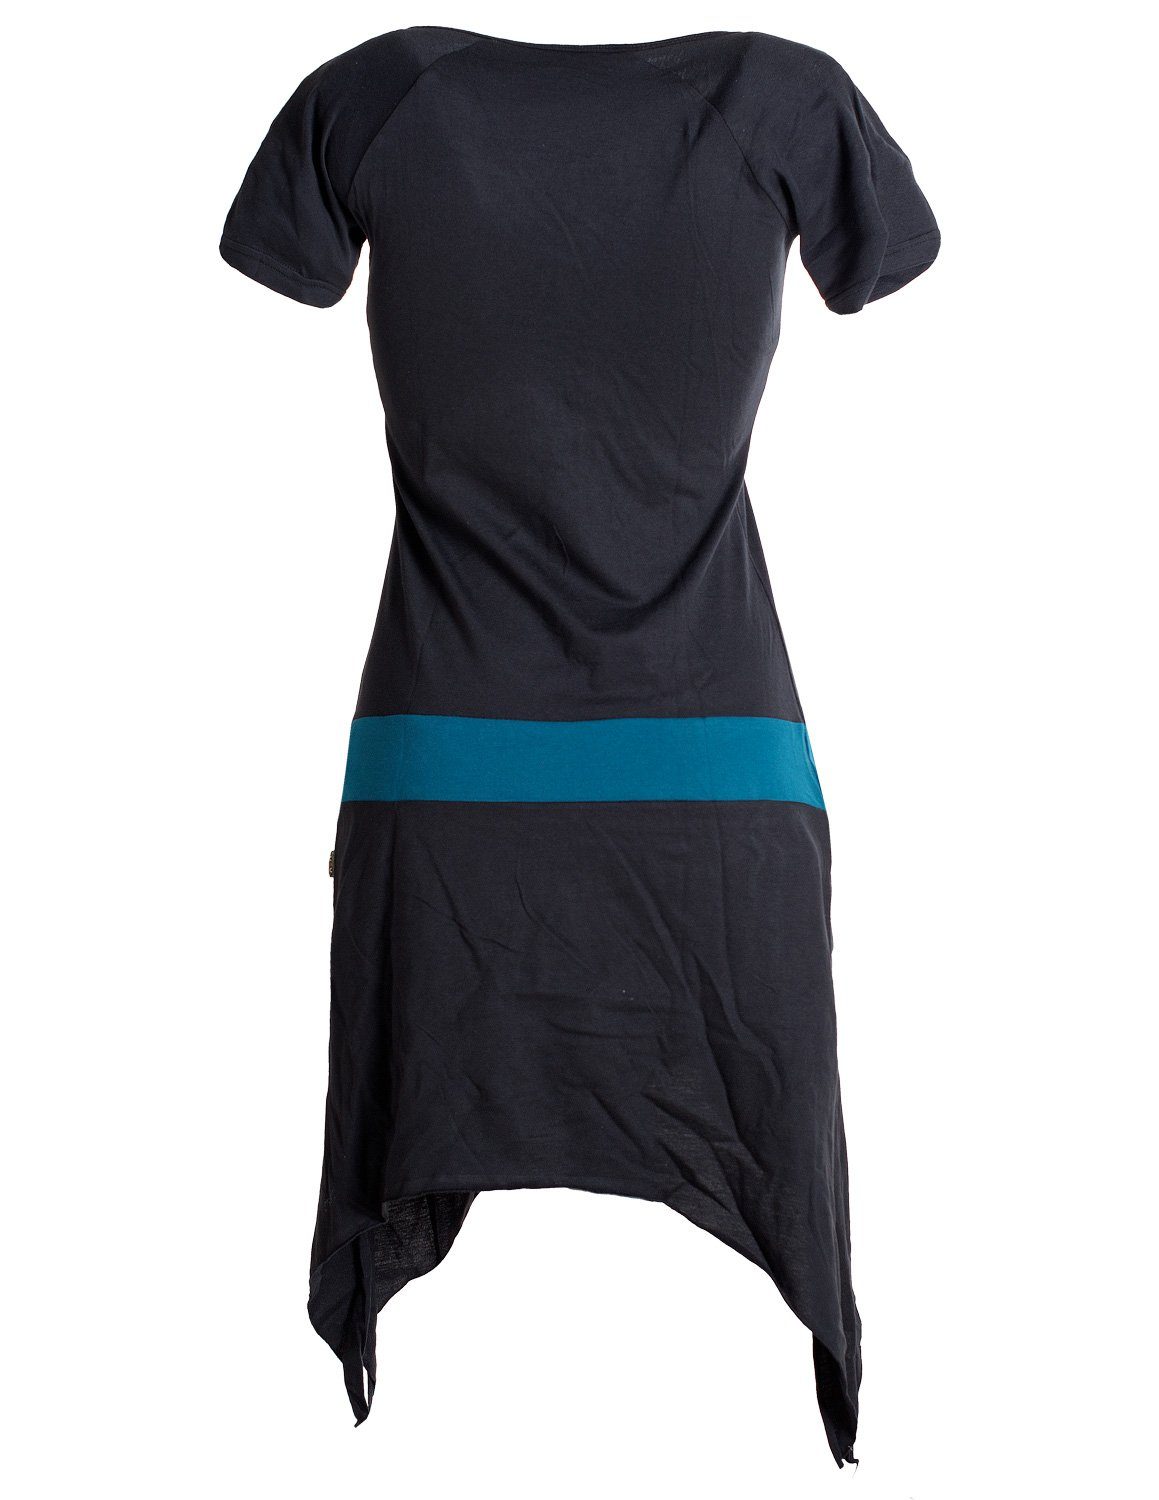 Vishes Sommerkleid Einfaches kurzärmliges Style Hippie aus Longshirt, Baumwolle Tunika, Zipfelkleid schwarz-türkis